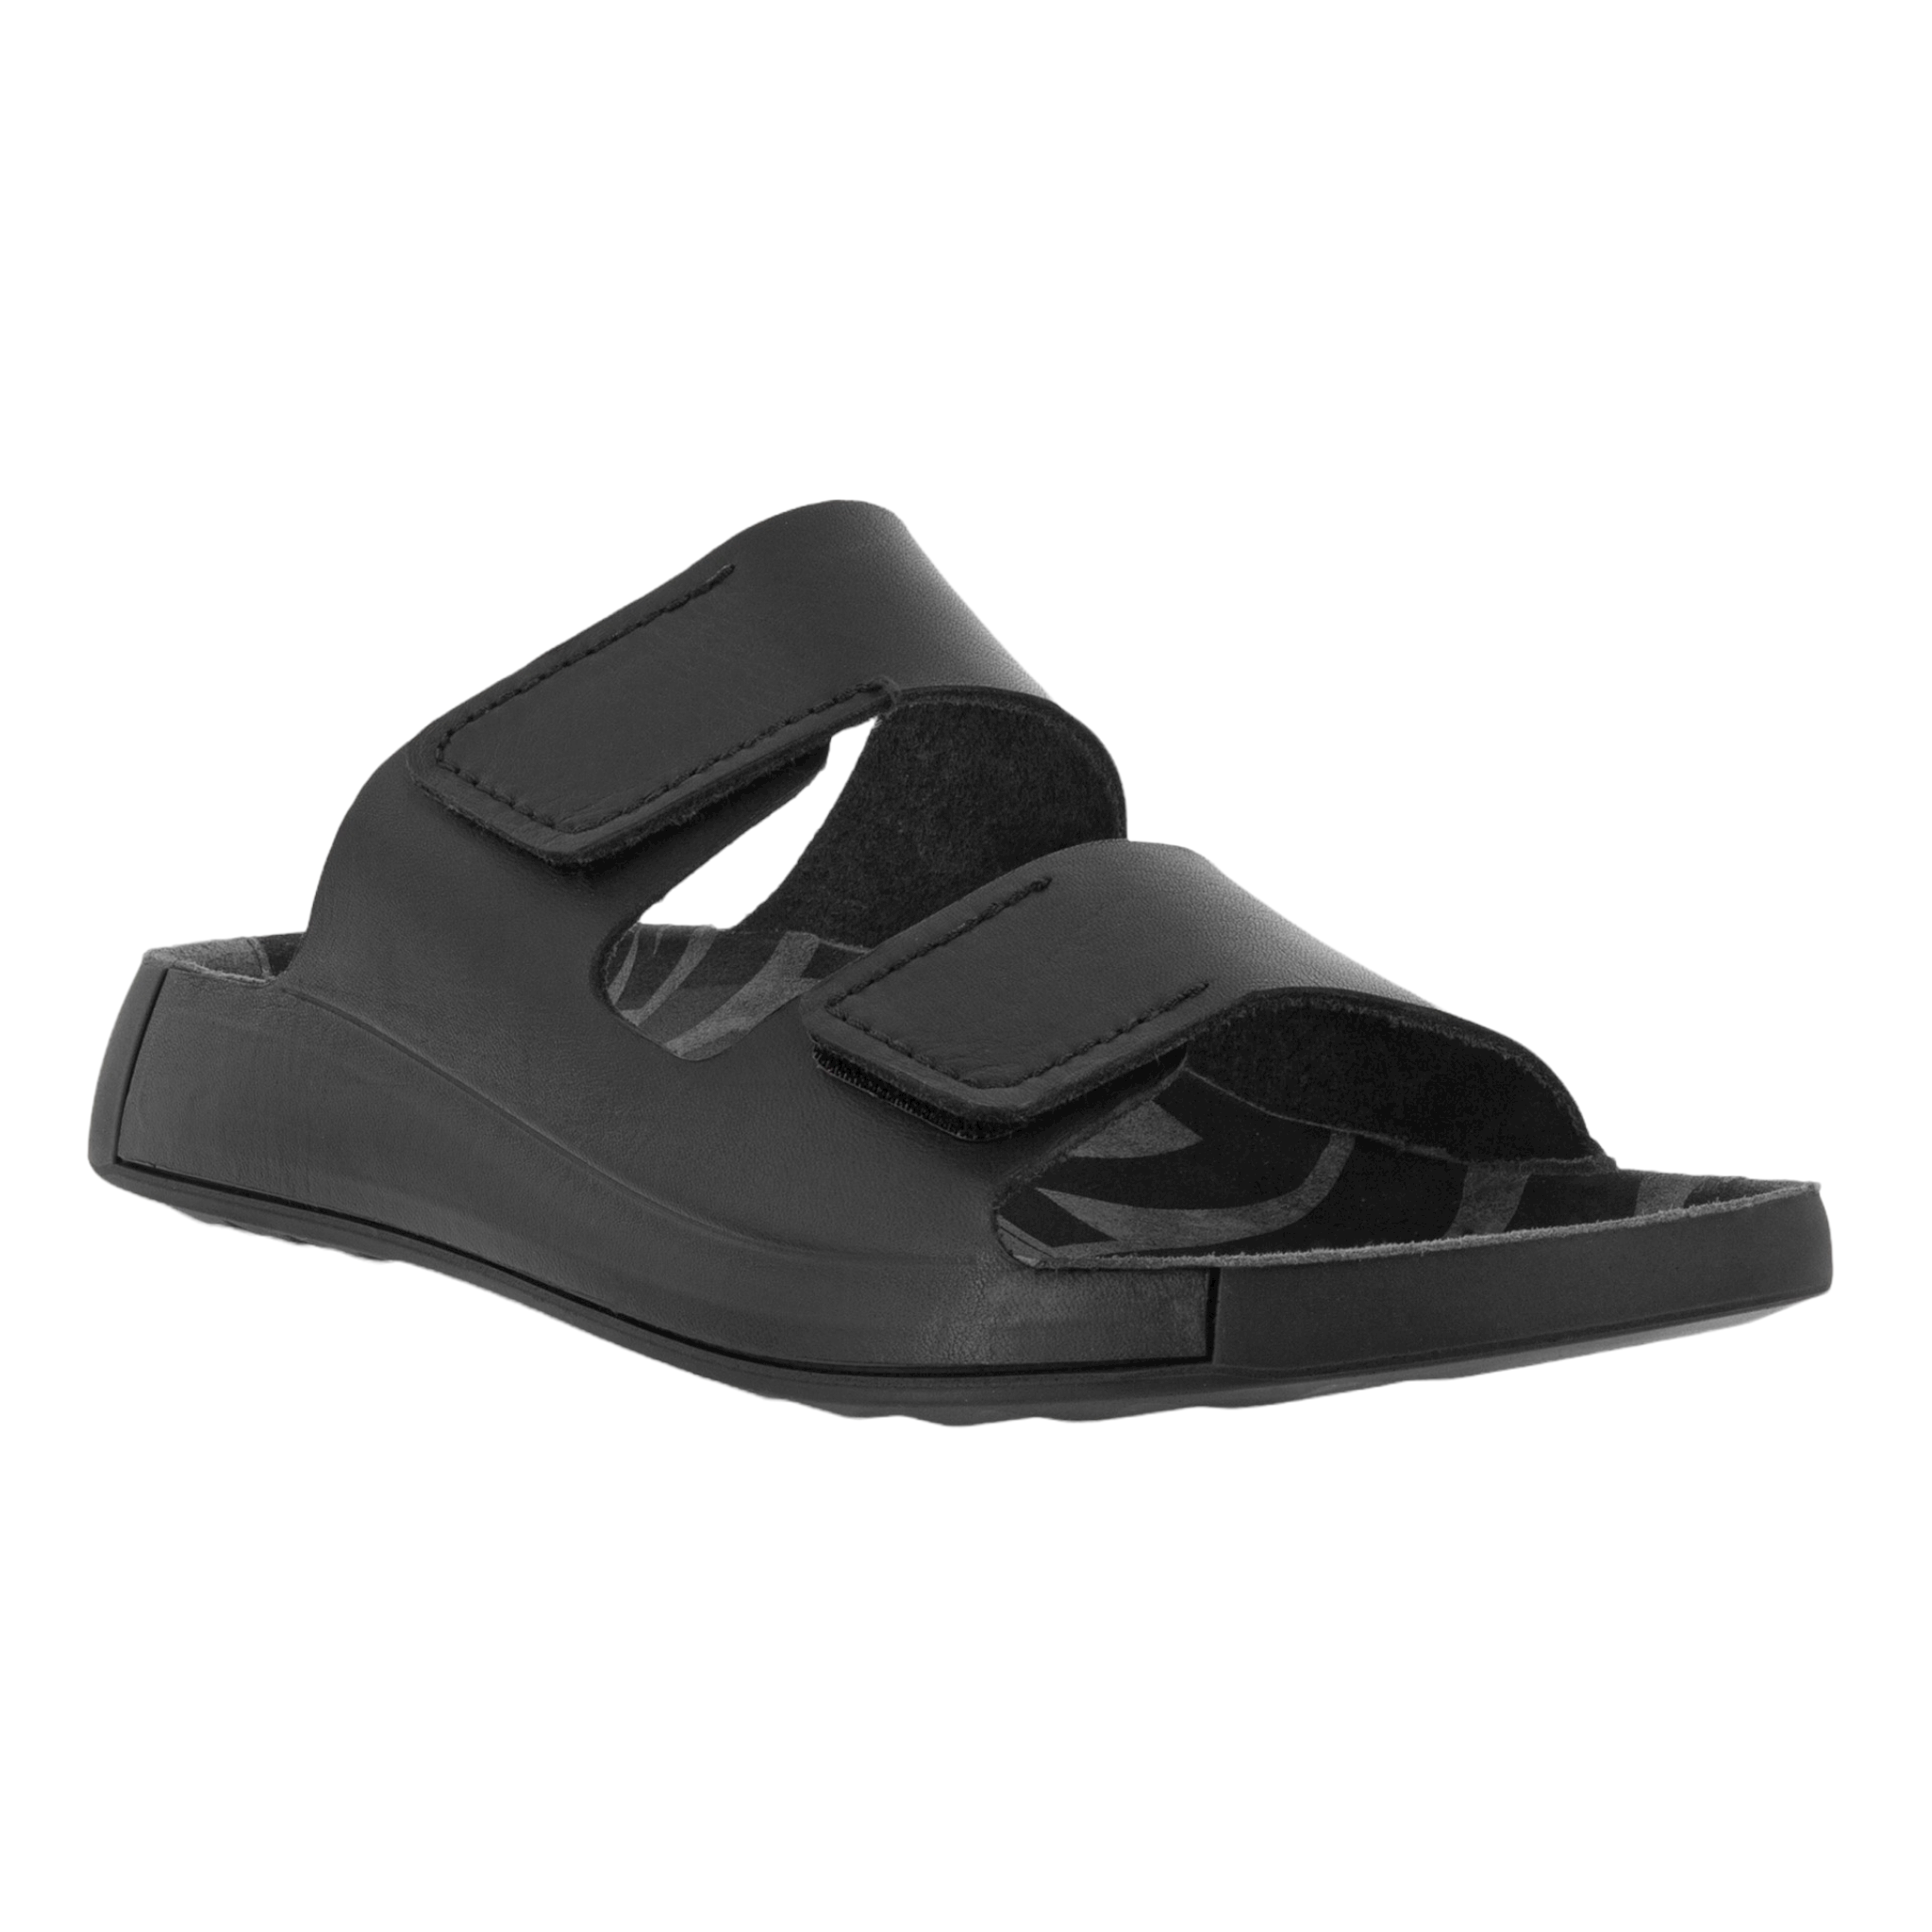 2nd Cozmo M Slide - shoe&amp;me - Ecco - Slide - Mens, Sandals, Slides/Scuffs, Summer 22